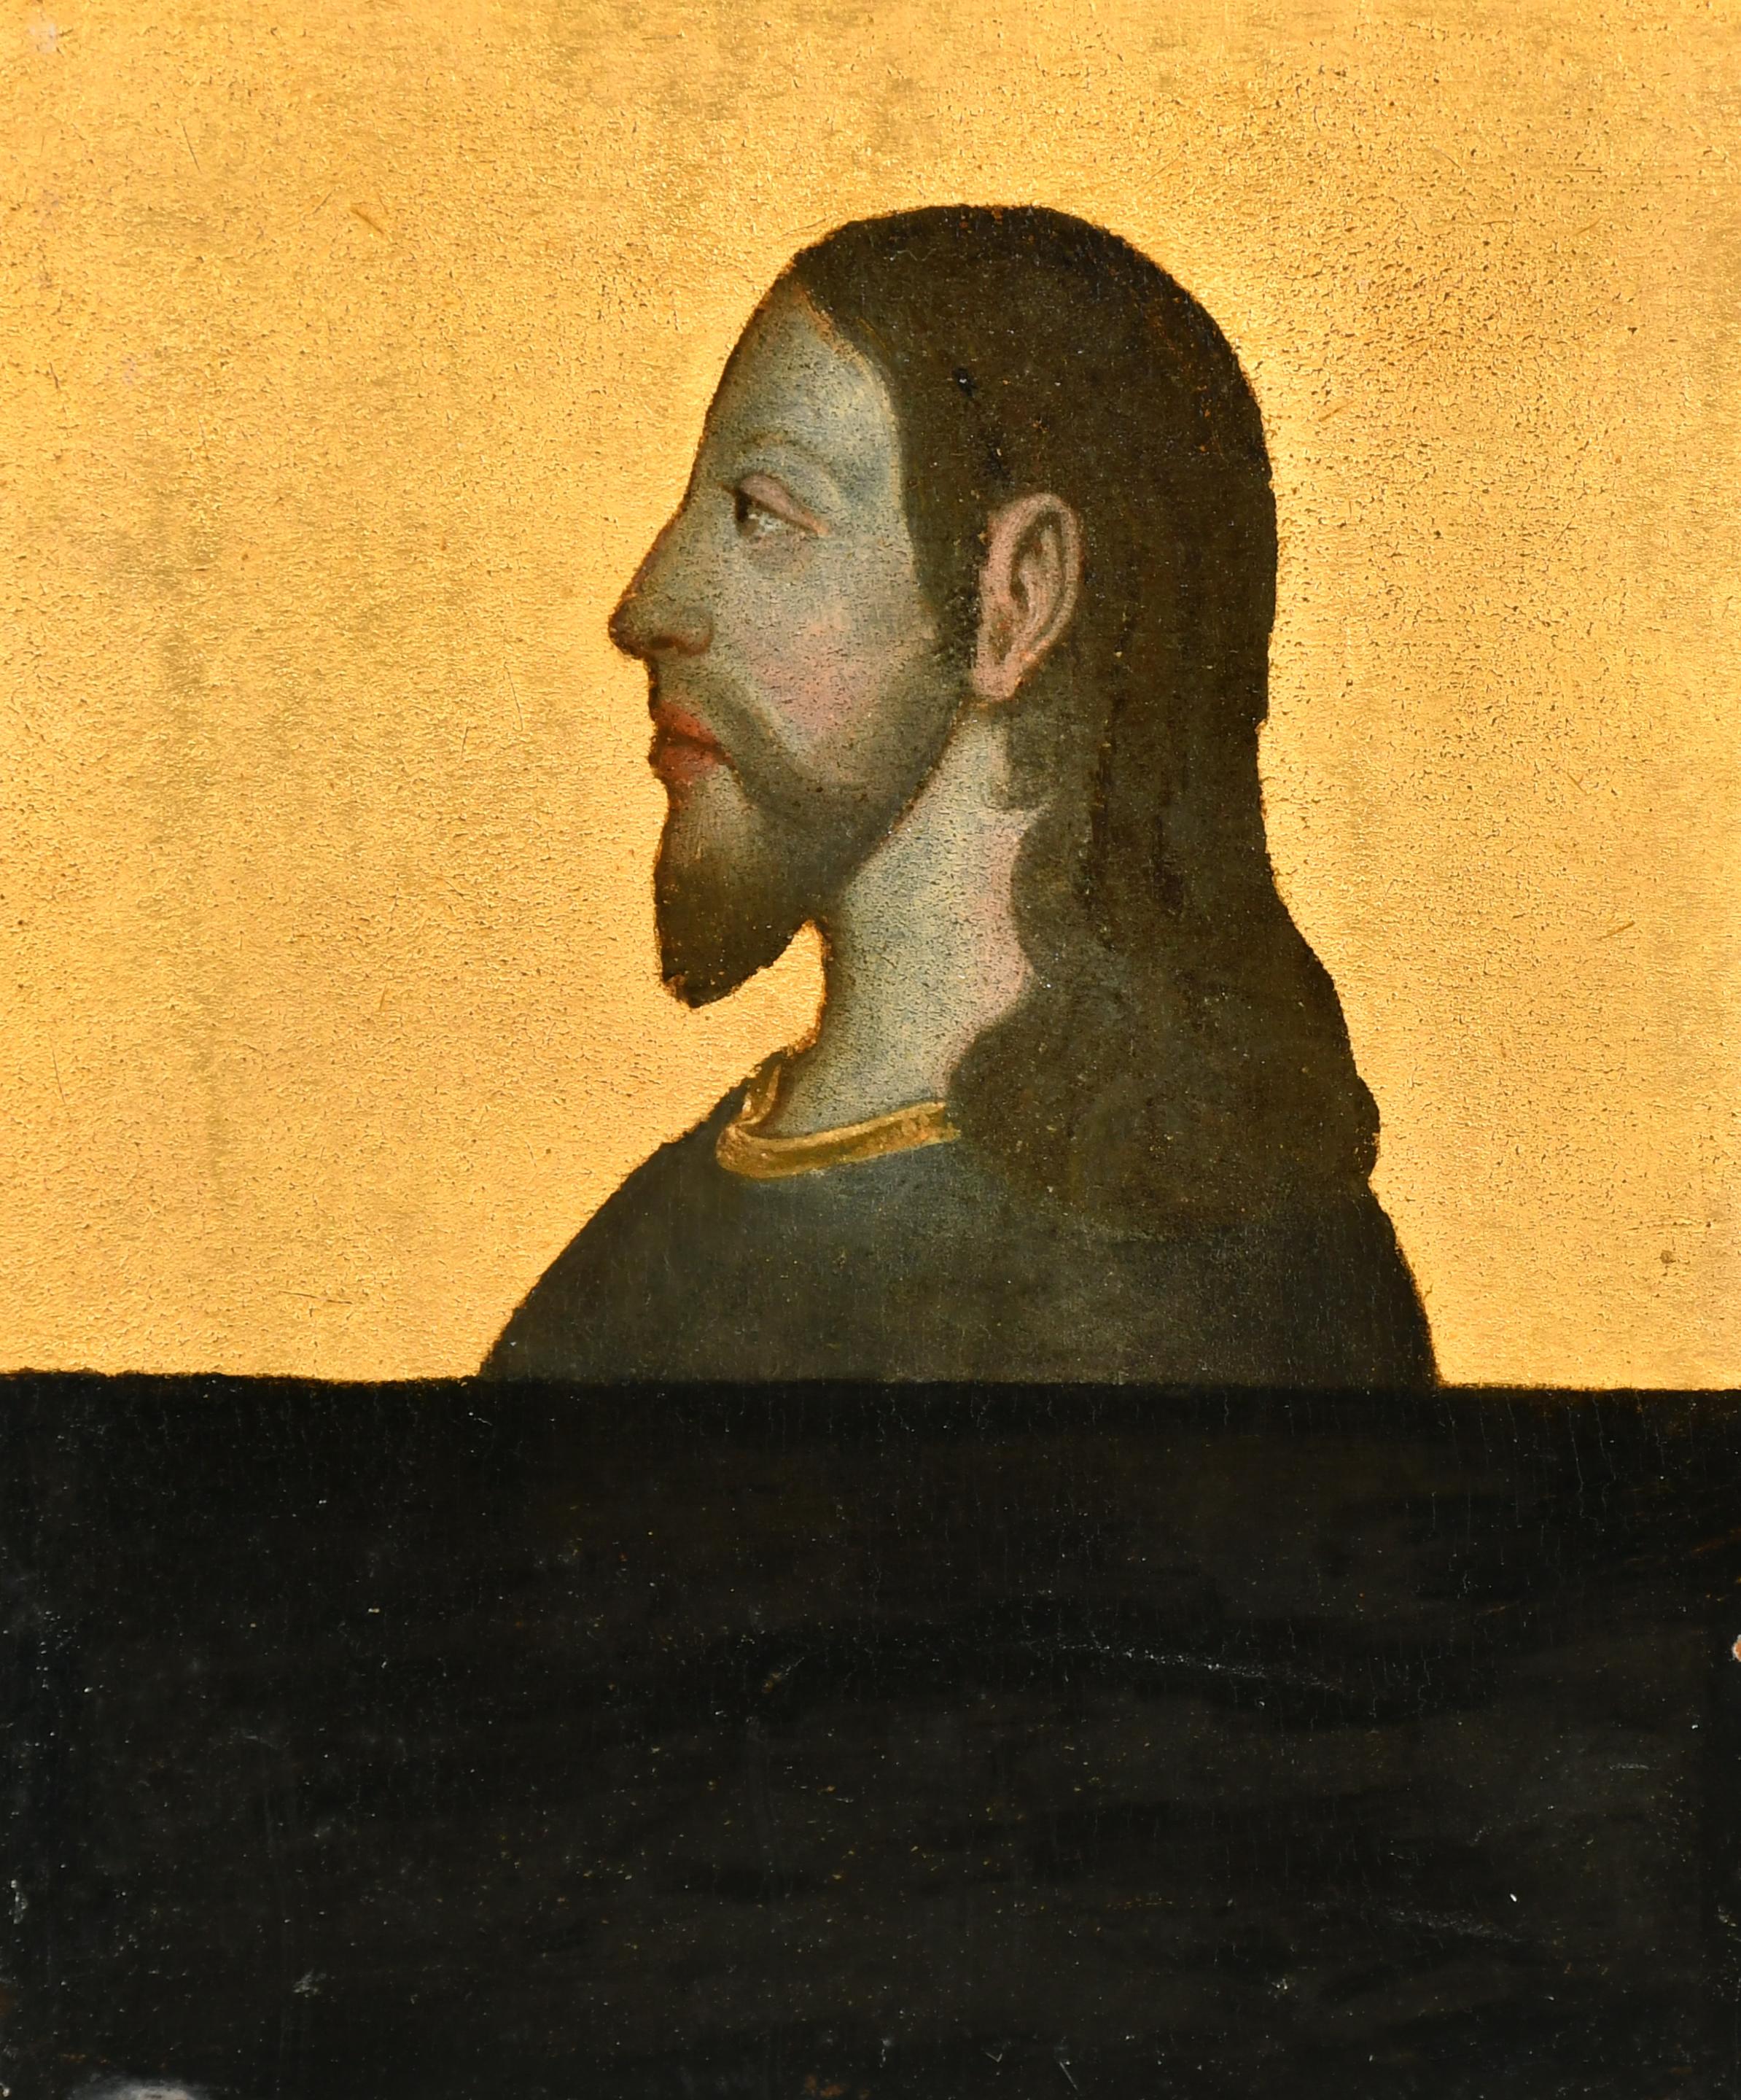 19th century Dutch School Portrait Painting – Kopfporträt im Renaissance-Stil von Christus, schönes antikes Ölgemälde